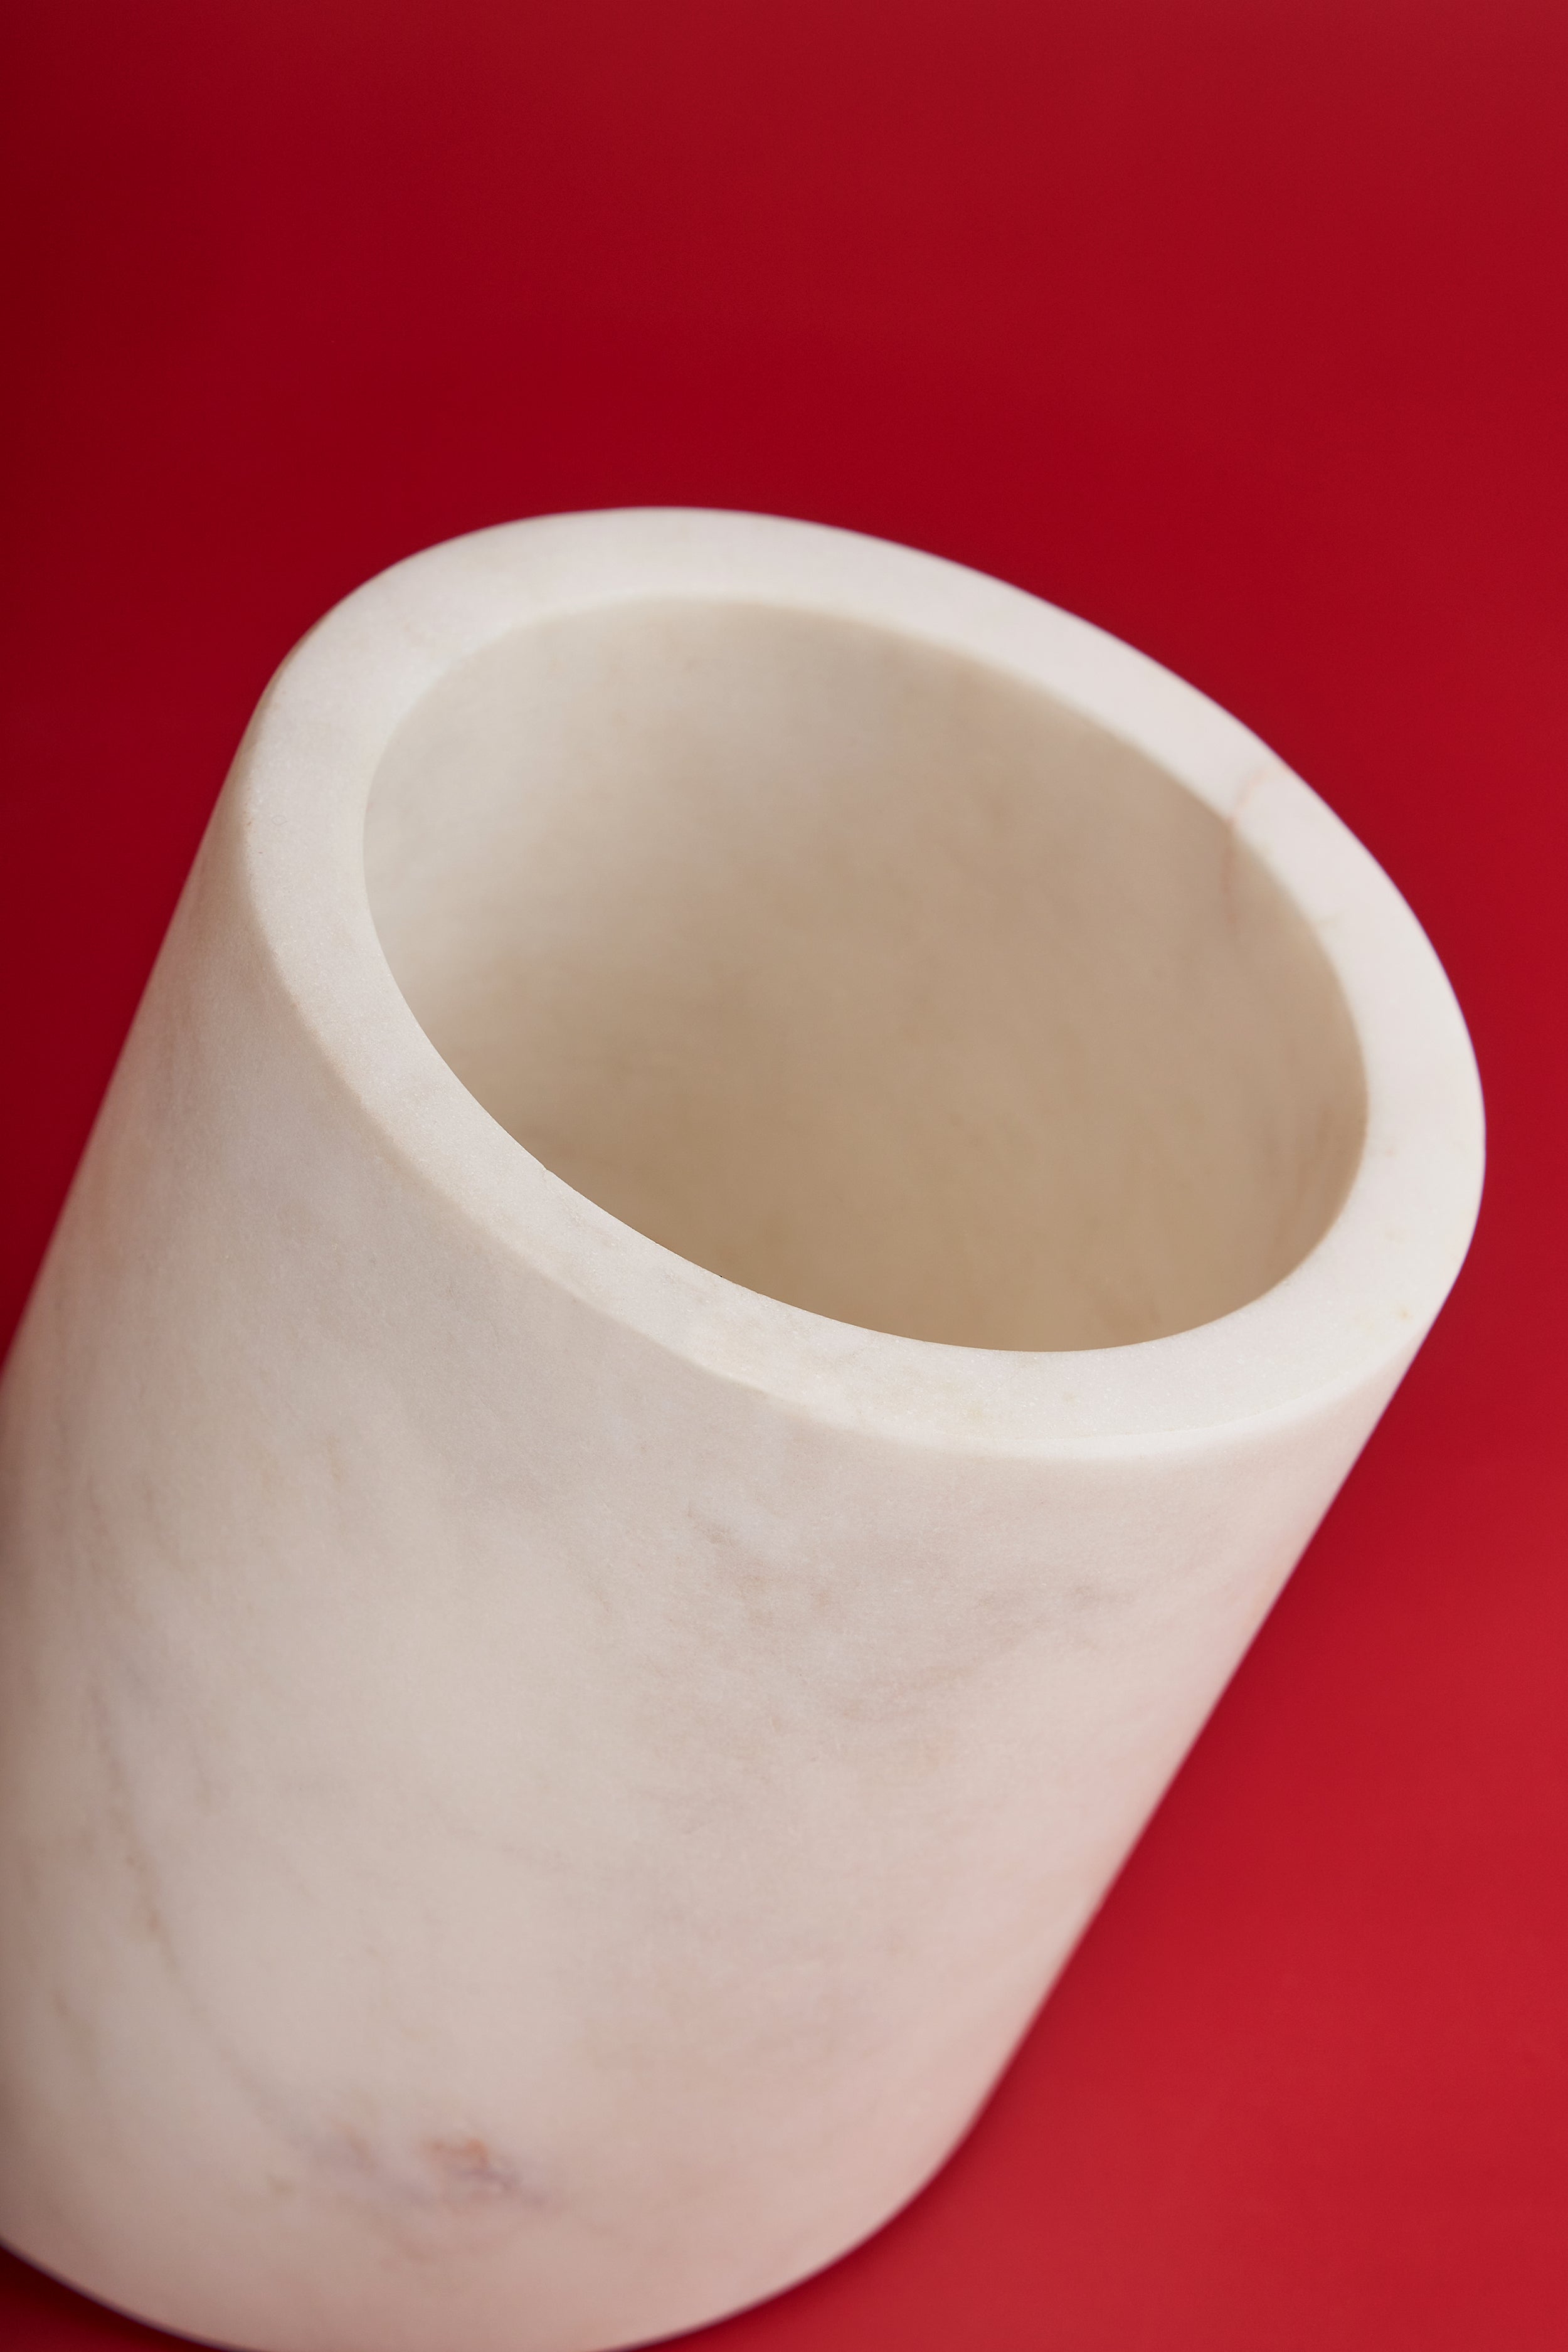 Wine Cooler-Kitchen Utensil Holder-Decorative Vase-Gift for Wine Lover